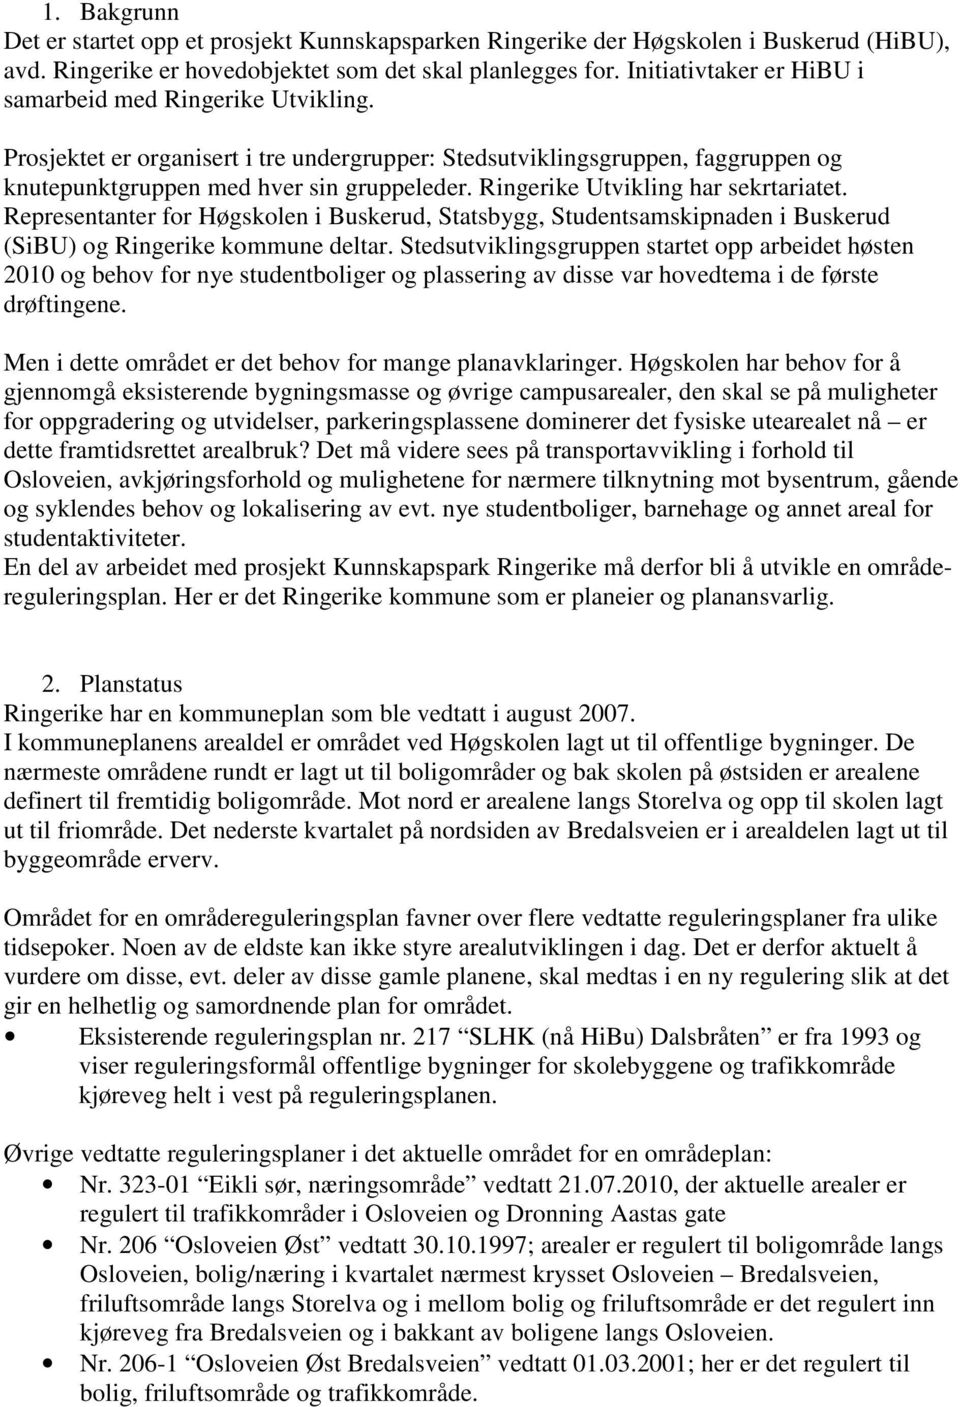 Ringerike Utvikling har sekrtariatet. Representanter for Høgskolen i Buskerud, Statsbygg, Studentsamskipnaden i Buskerud (SiBU) og Ringerike kommune deltar.